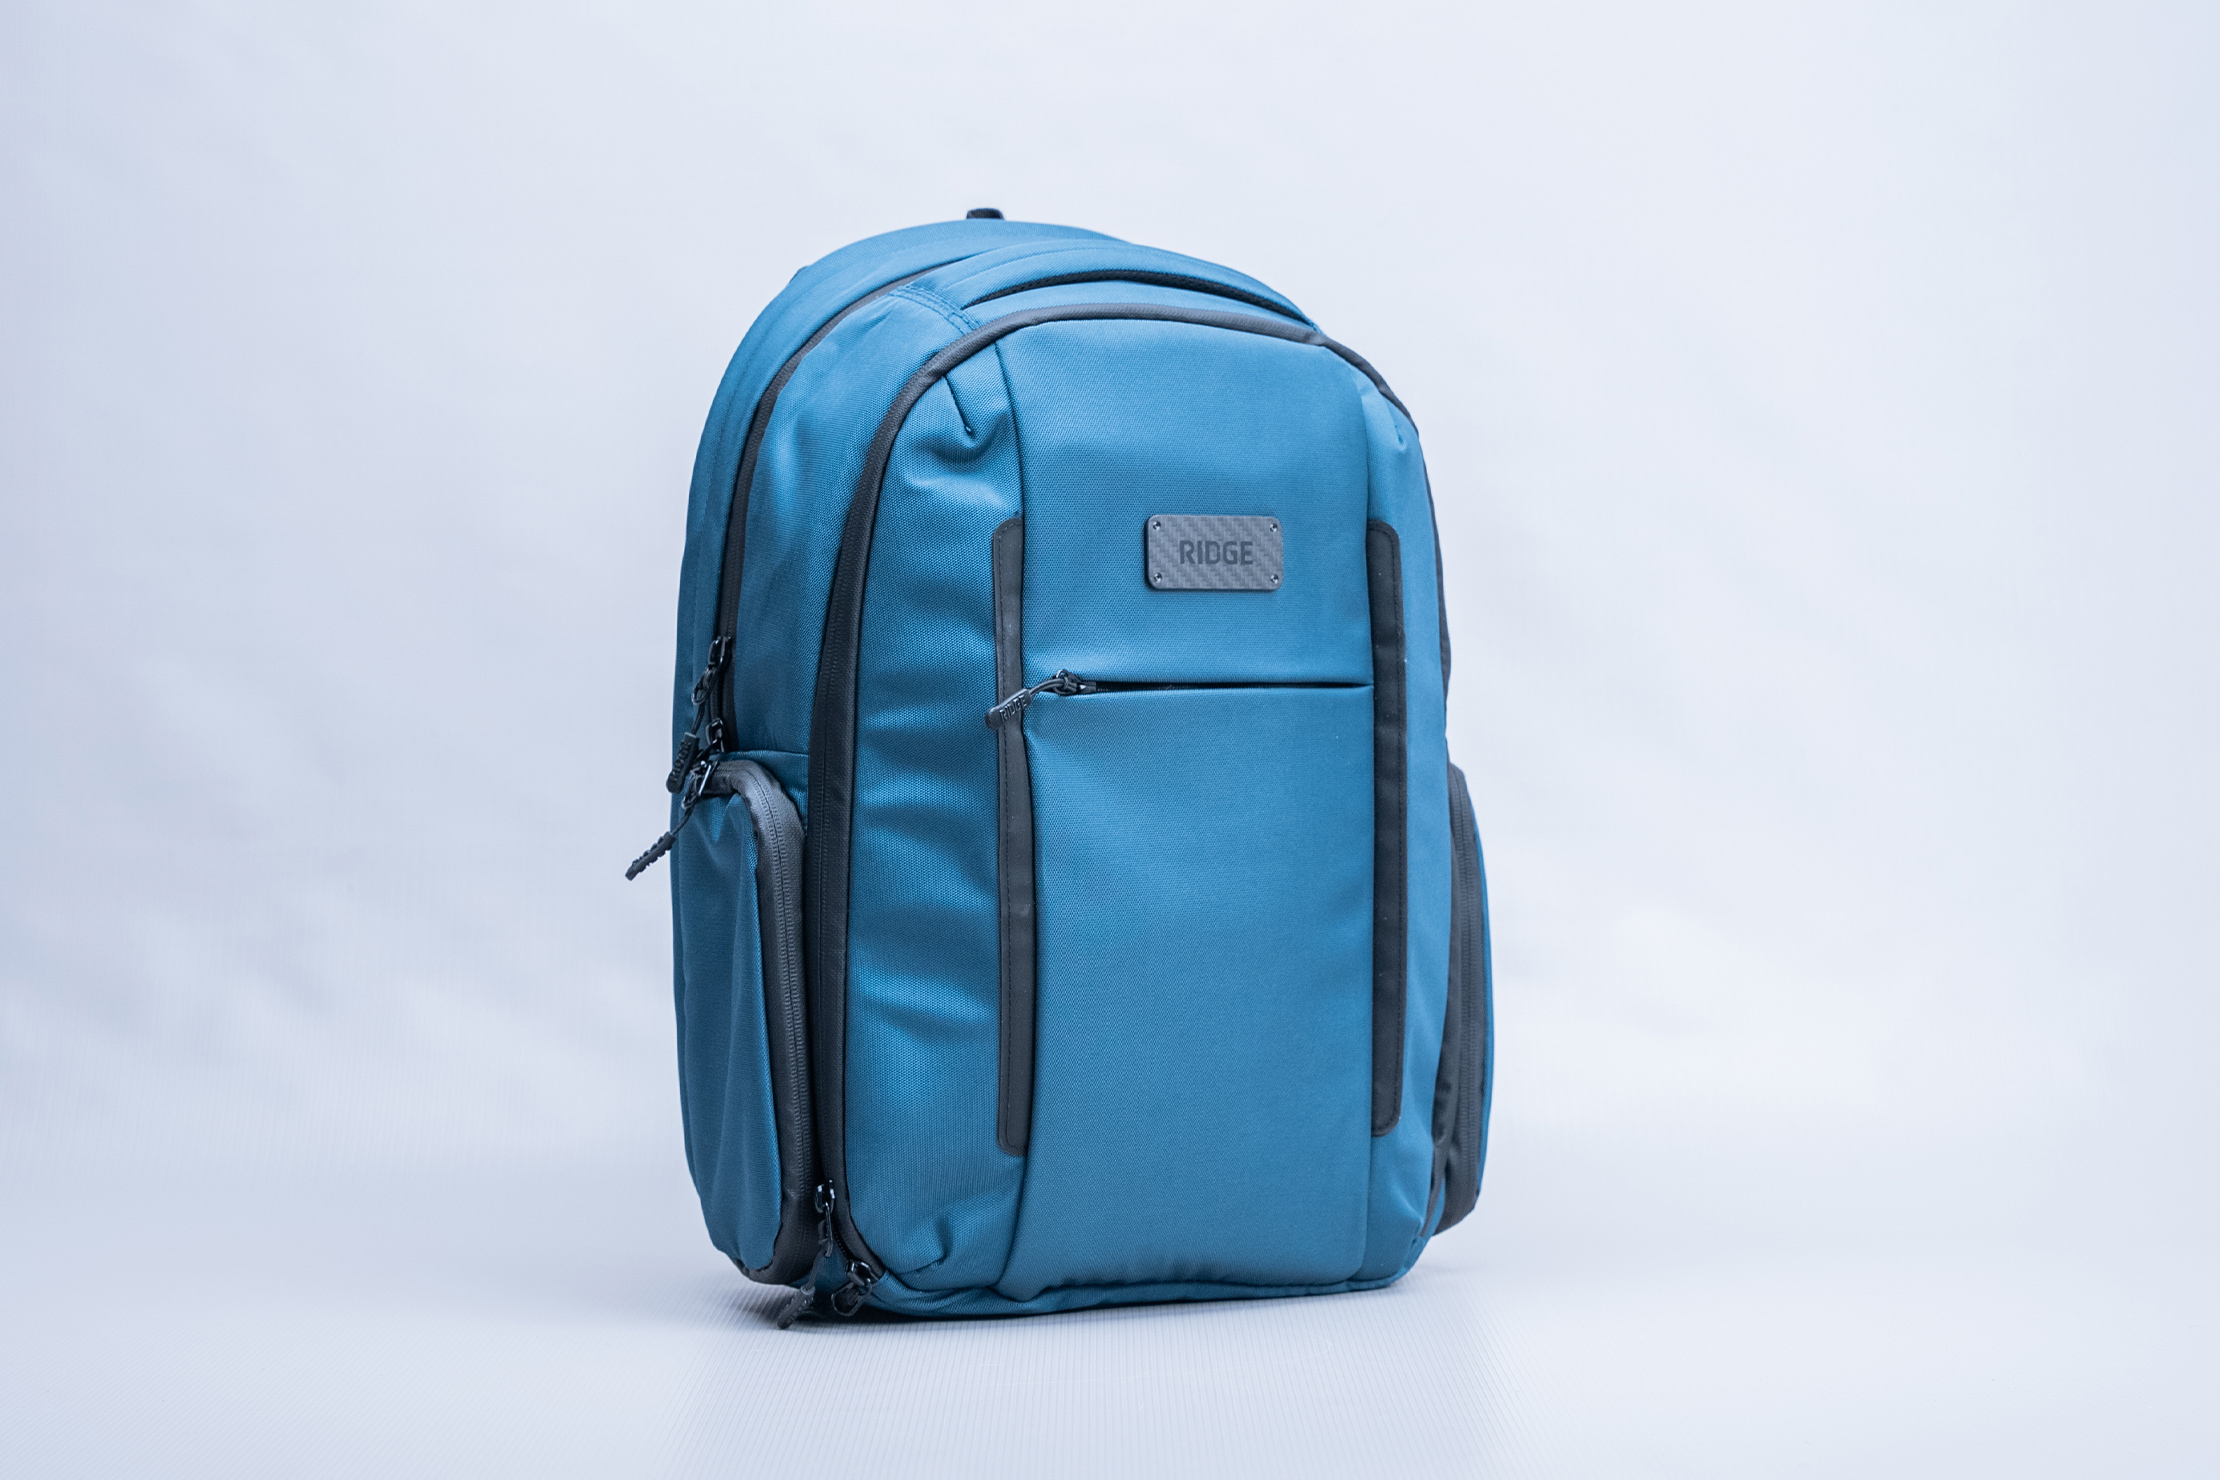 The Ridge Commuter Backpack V2 Full